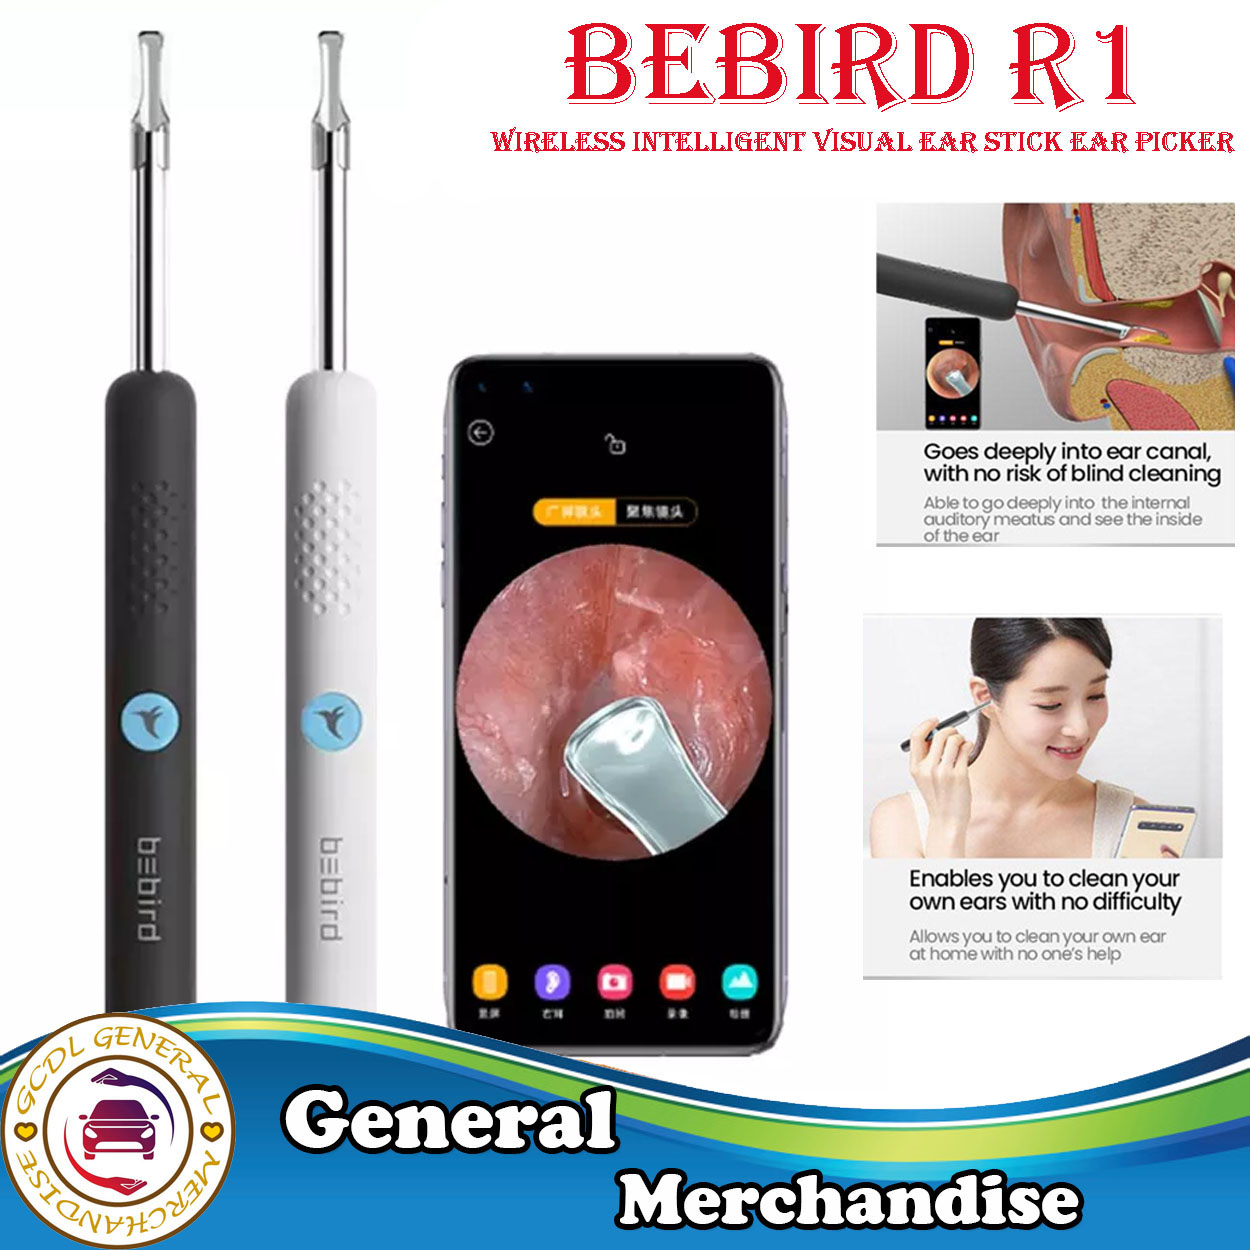 Bebird R1 Wireless Intelligent Visual Ear Stick Ear Picker 300W